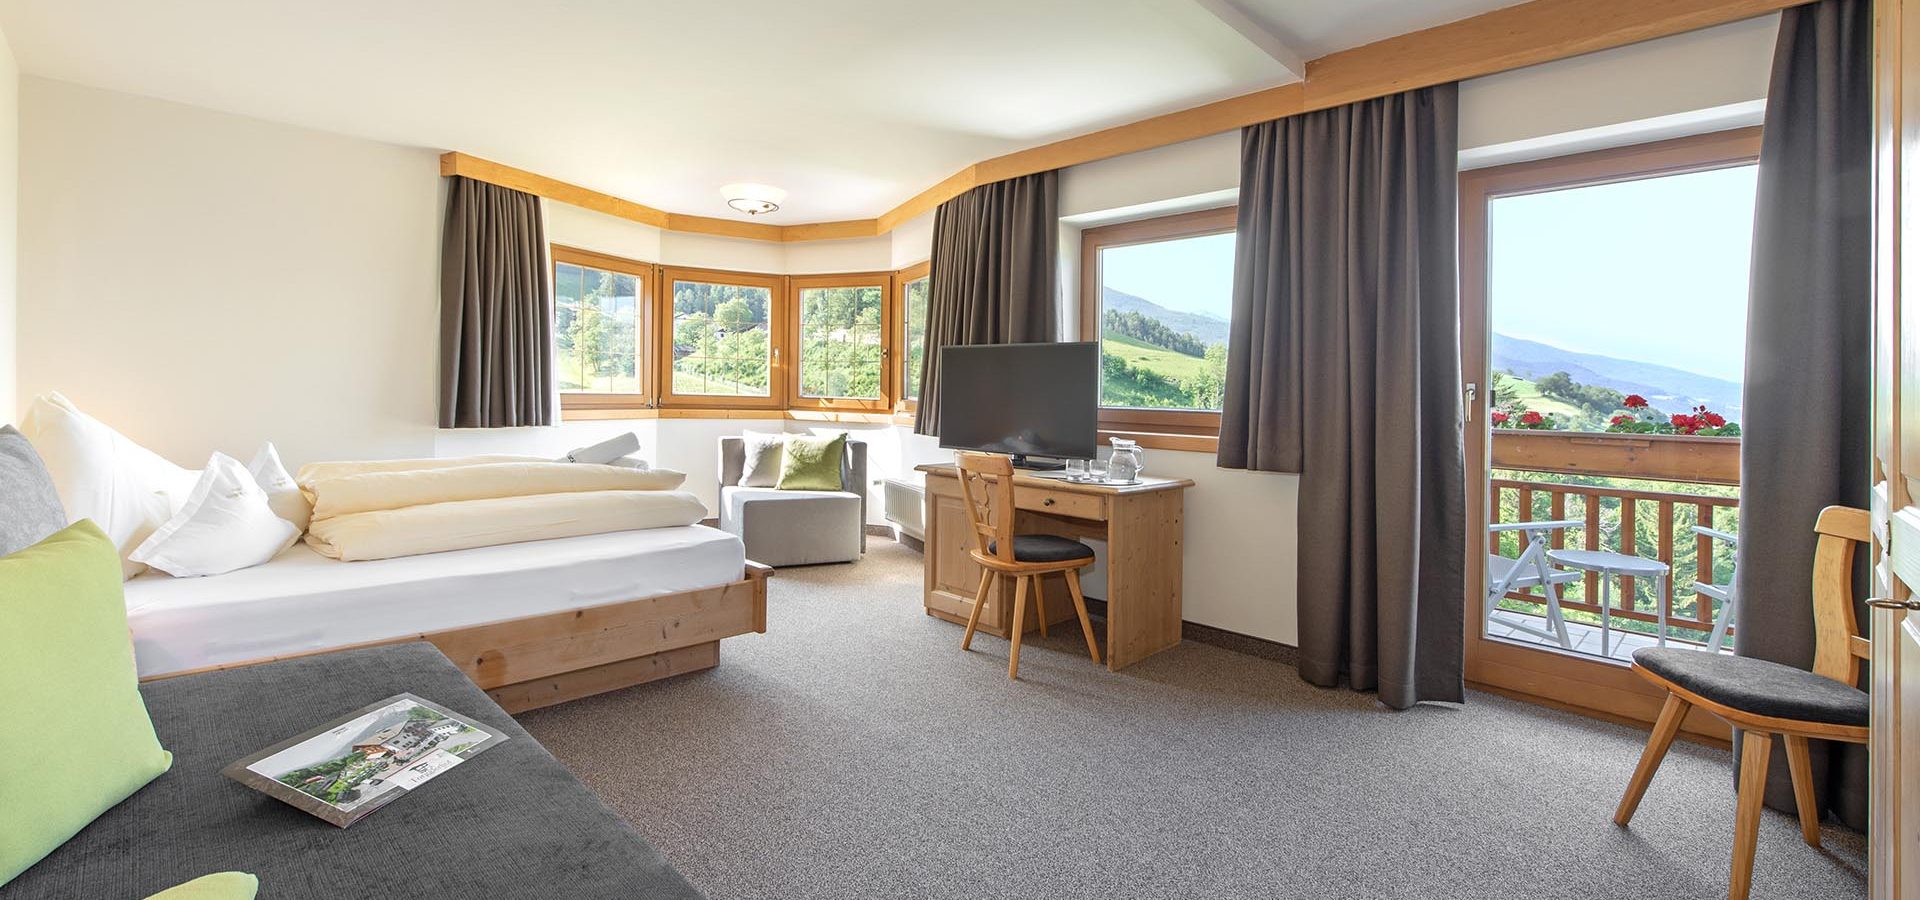 Ihre komfortable Unterkunft bei Brixen